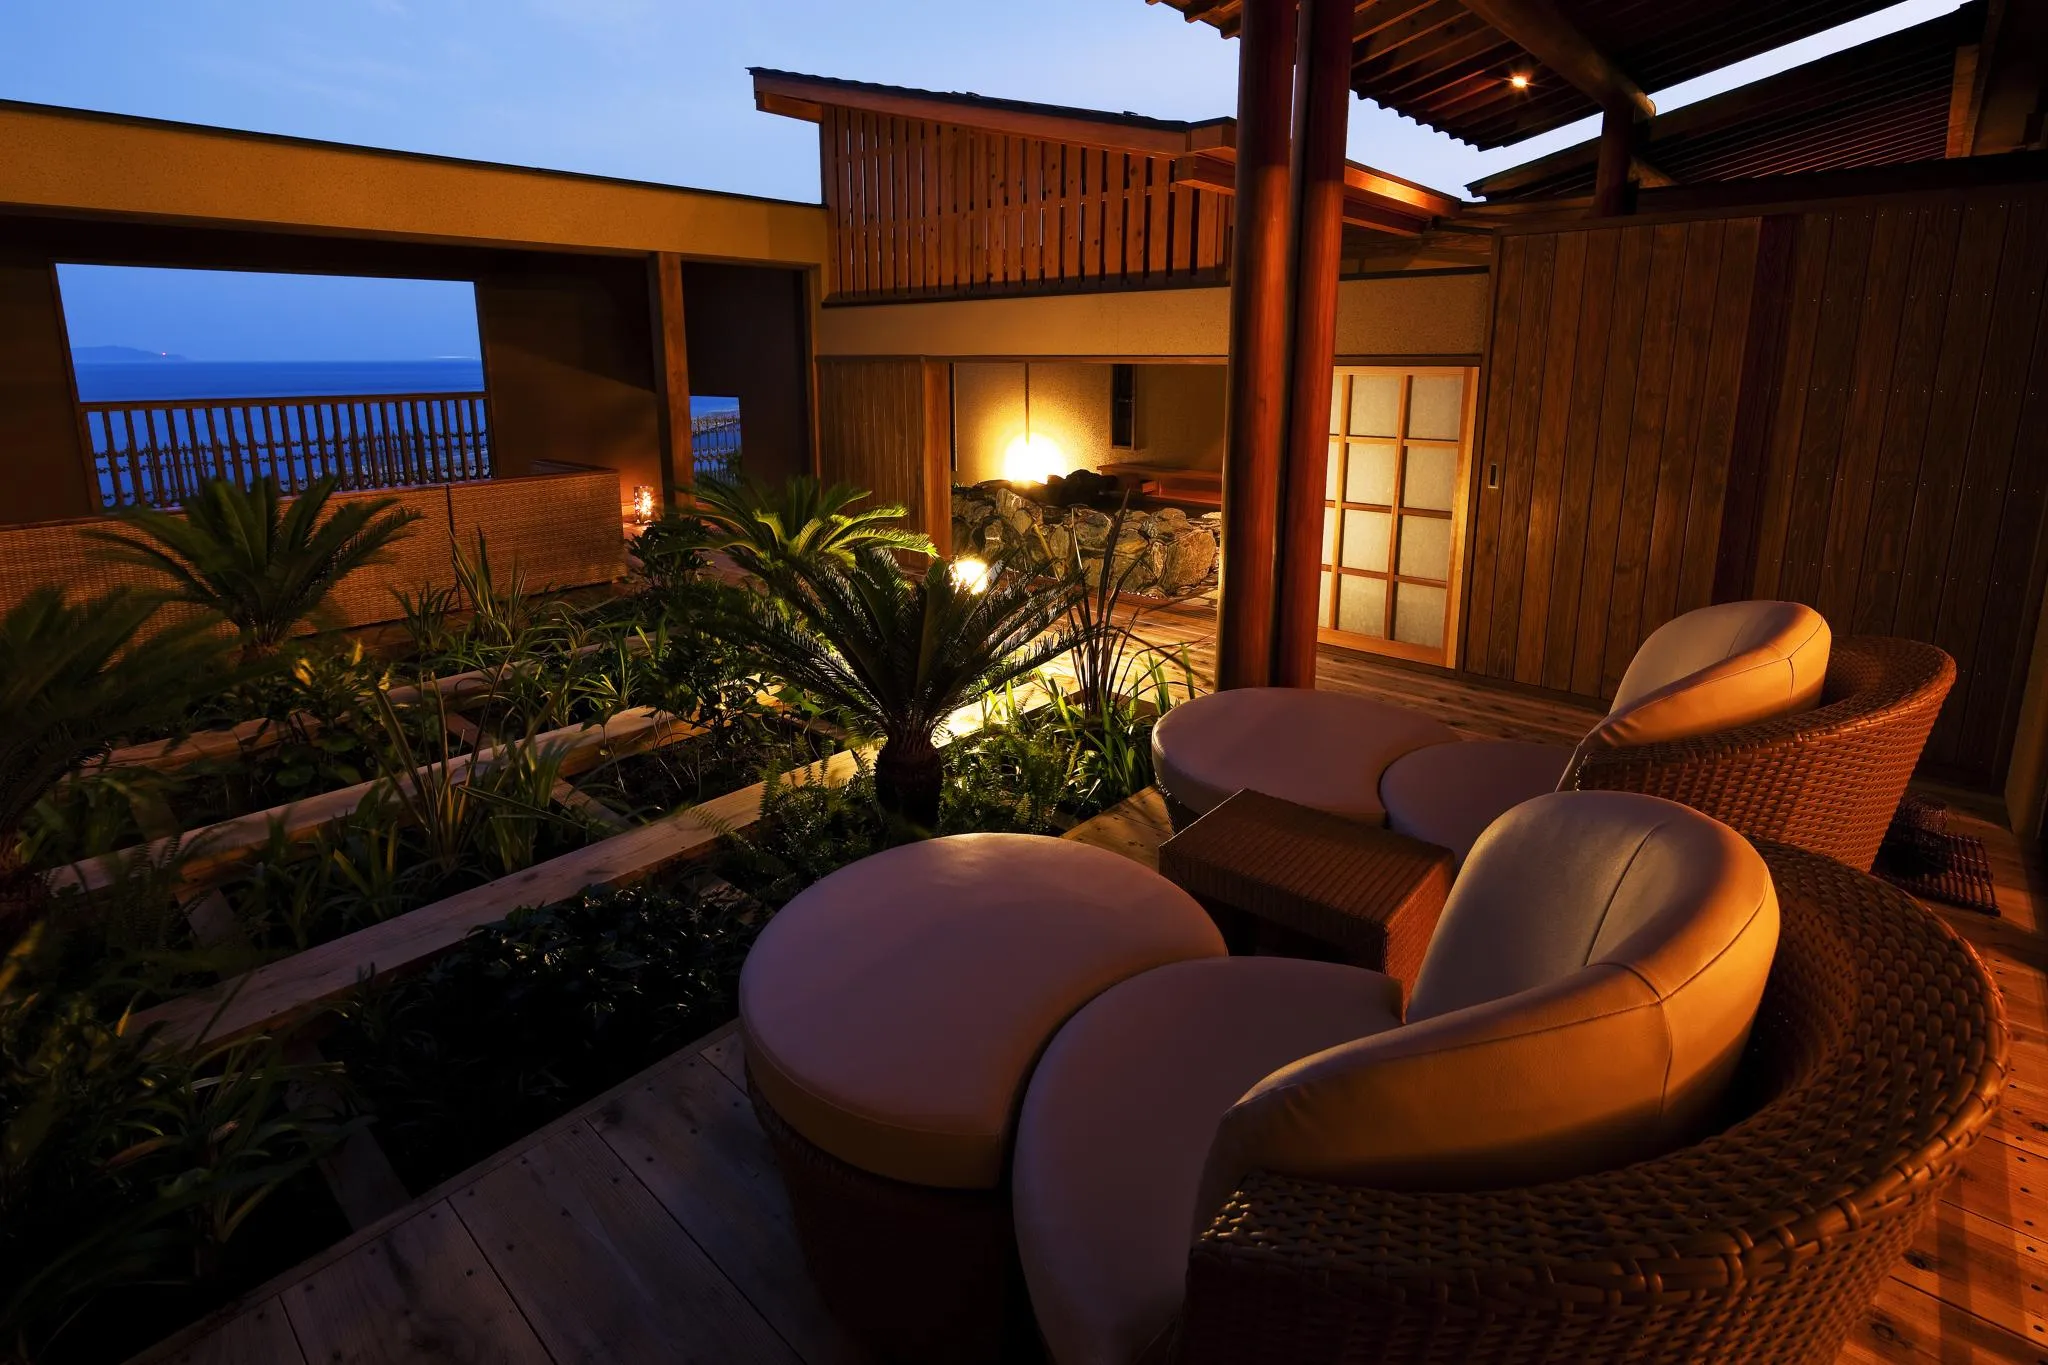 淡路島で人気のホテル 旅館 23年 宿泊予約はrelux